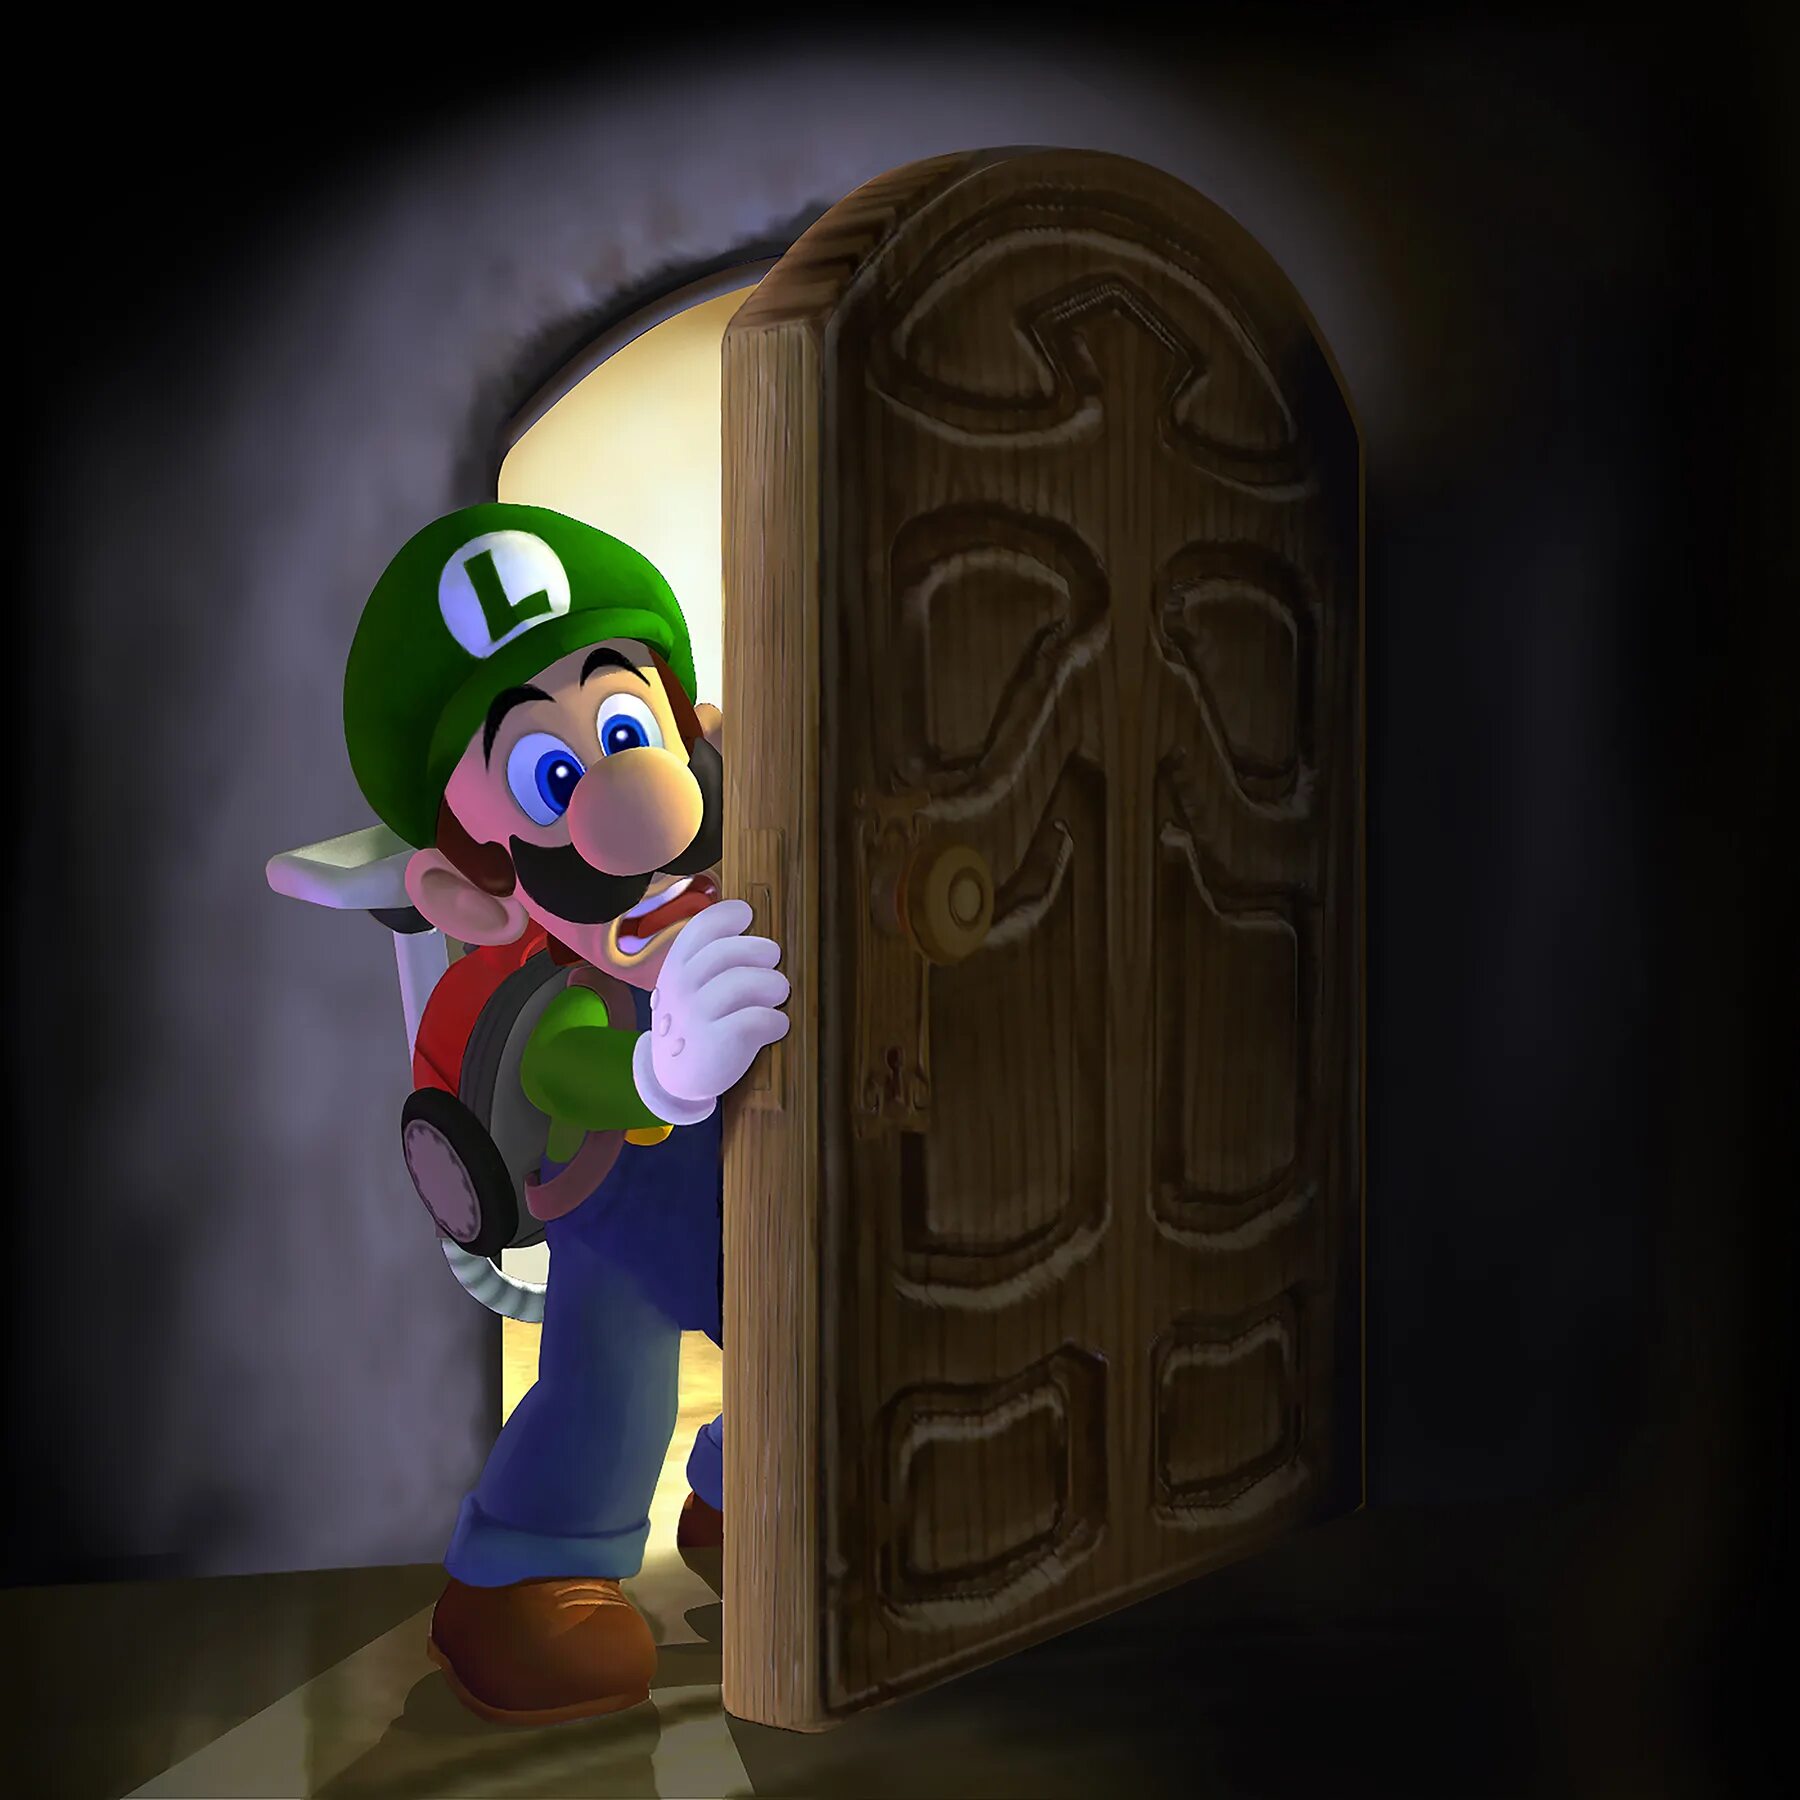 Nintendo luigi mansion. Луиджи Мансион 1. Луиджи из Luigi s Mansion 3. Luigis Manision 1 Luigi. Luigi's Mansion [3ds].